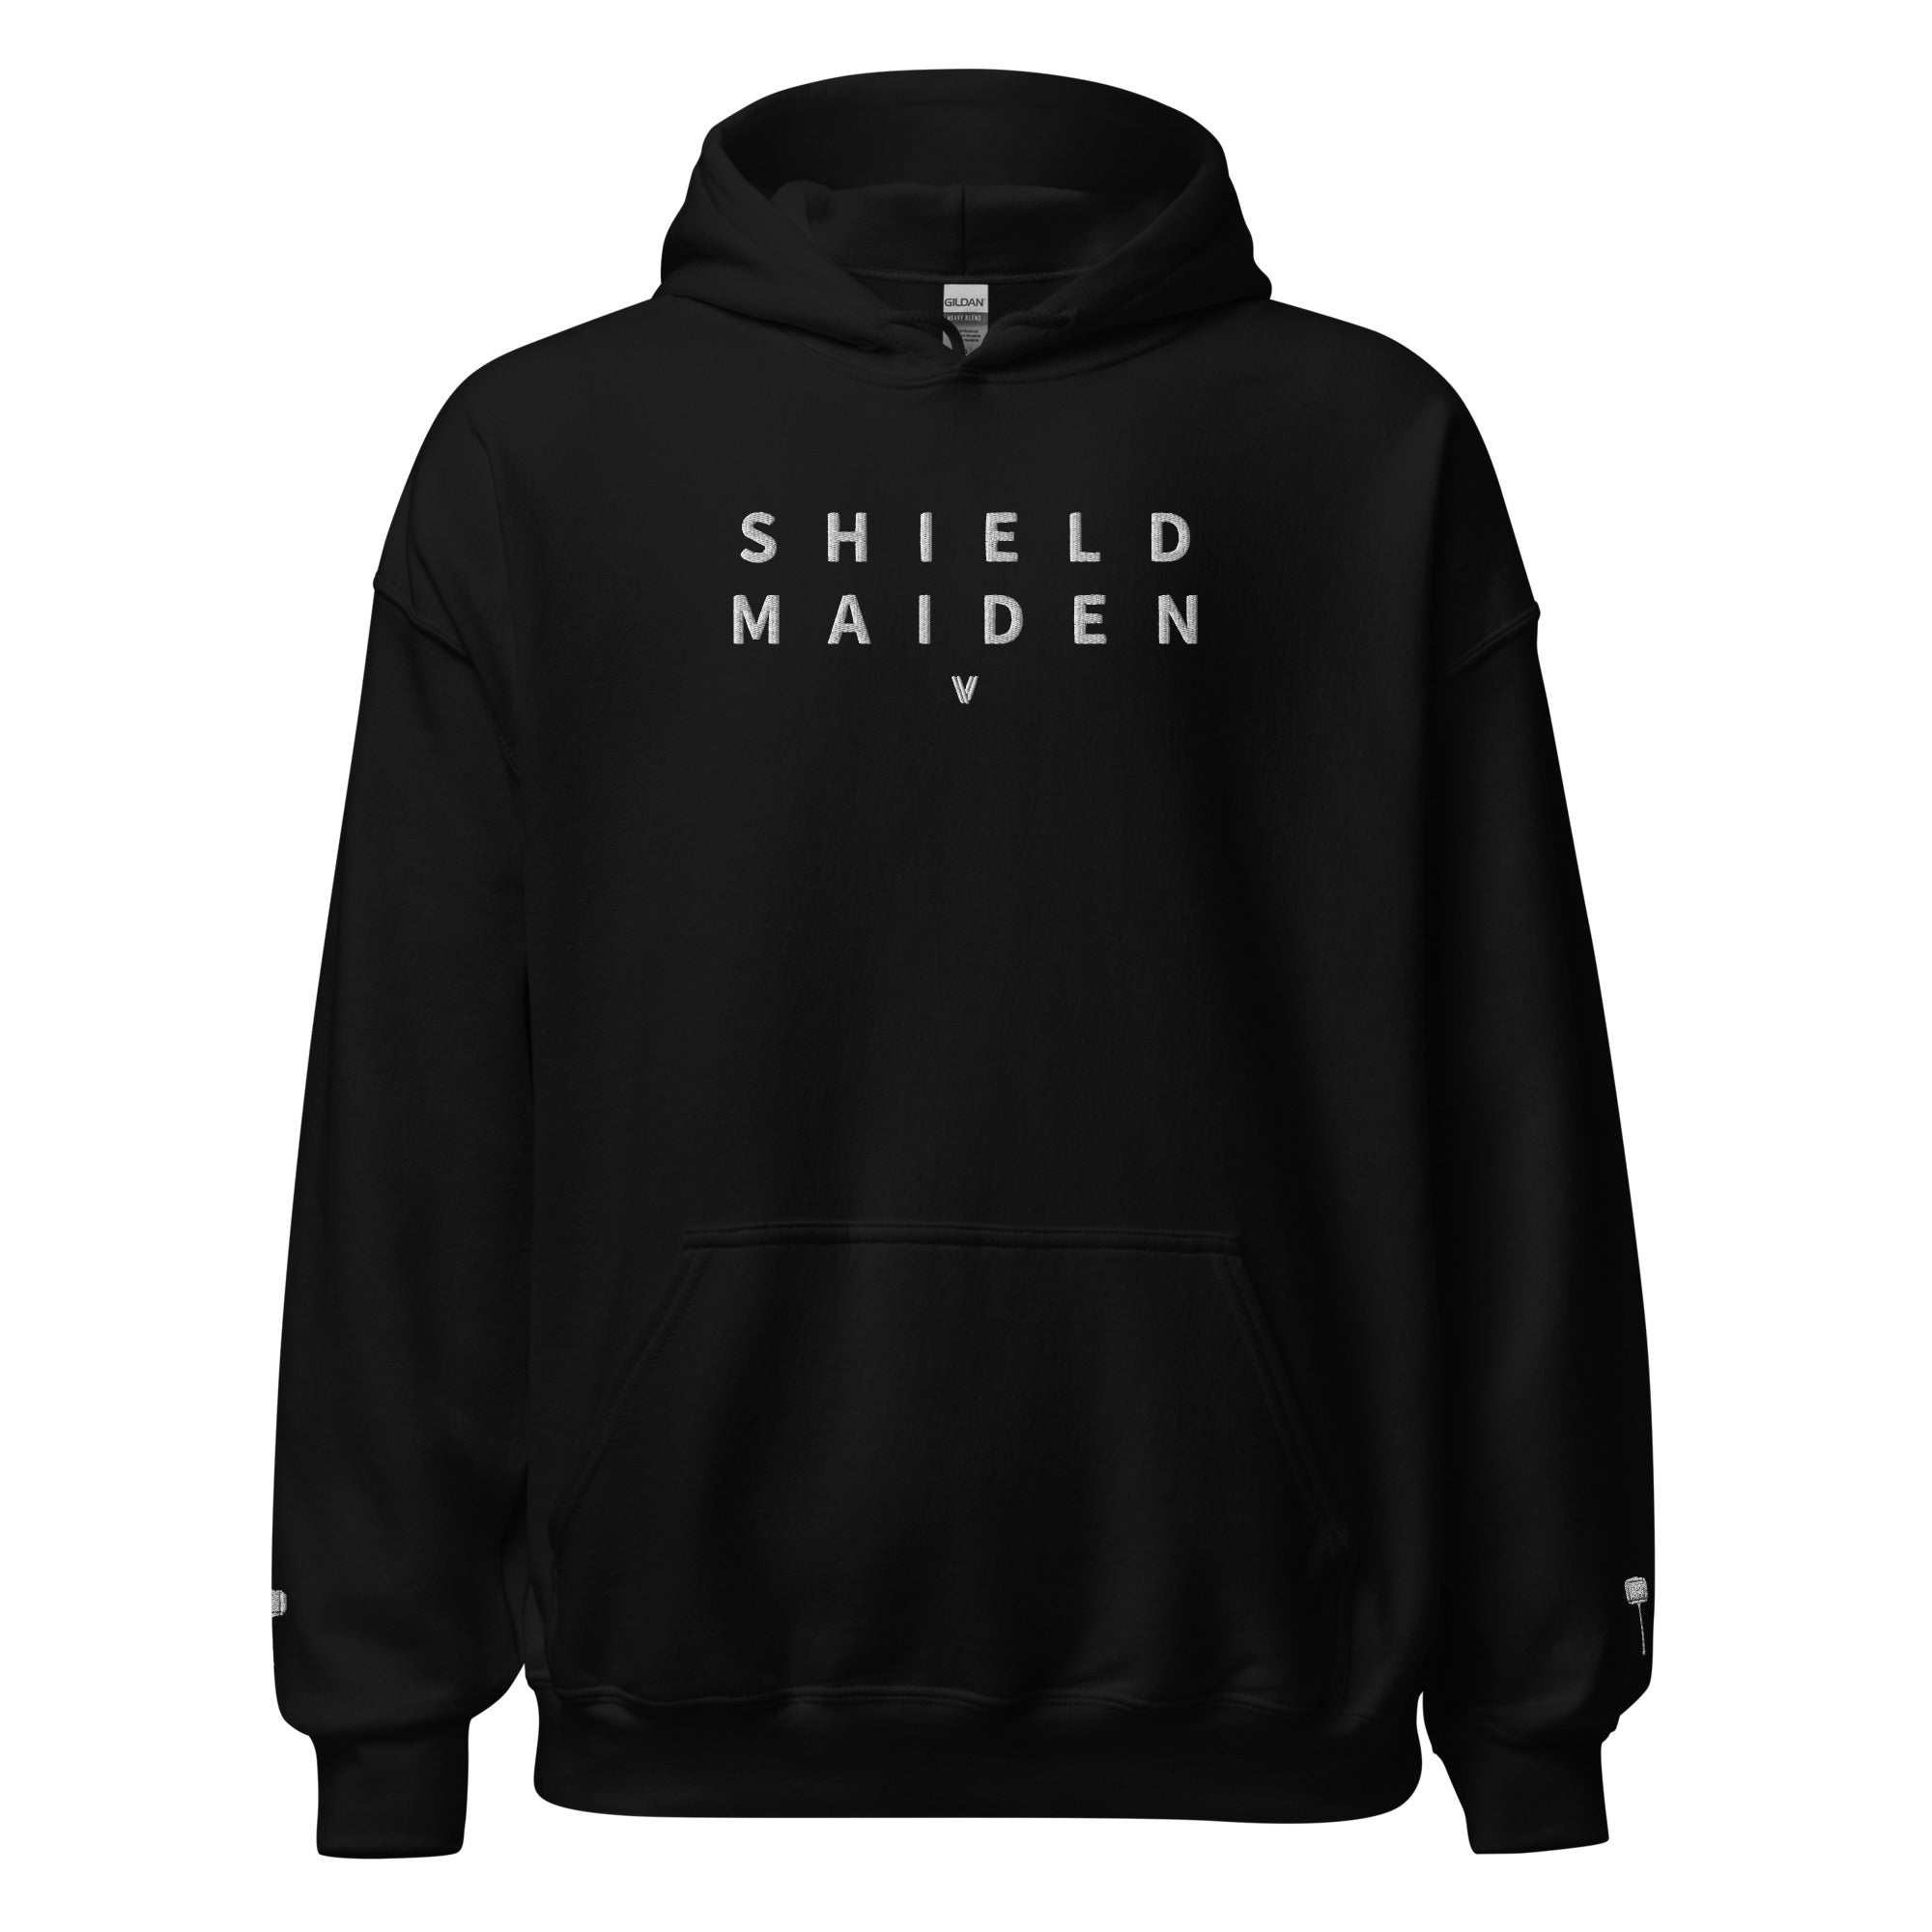 shield maiden hoodie